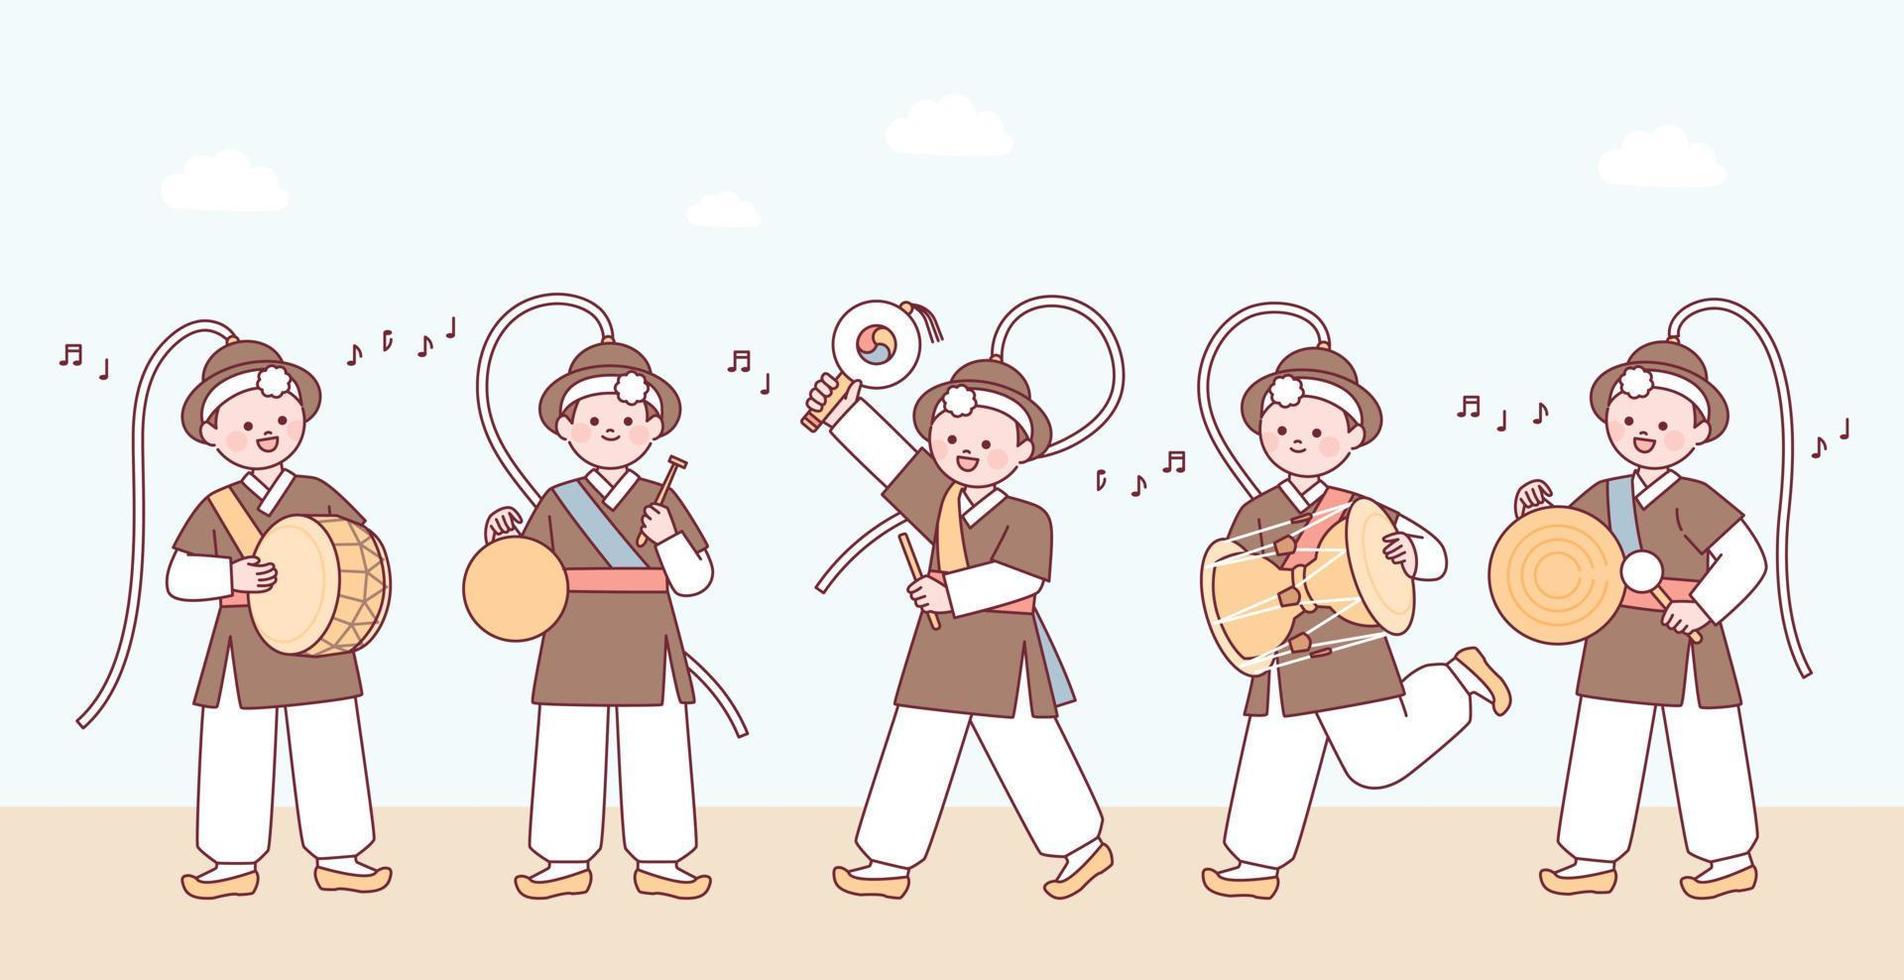 personnages mignons portant des vêtements coréens traditionnels et jouant des instruments de musique traditionnels. vecteur